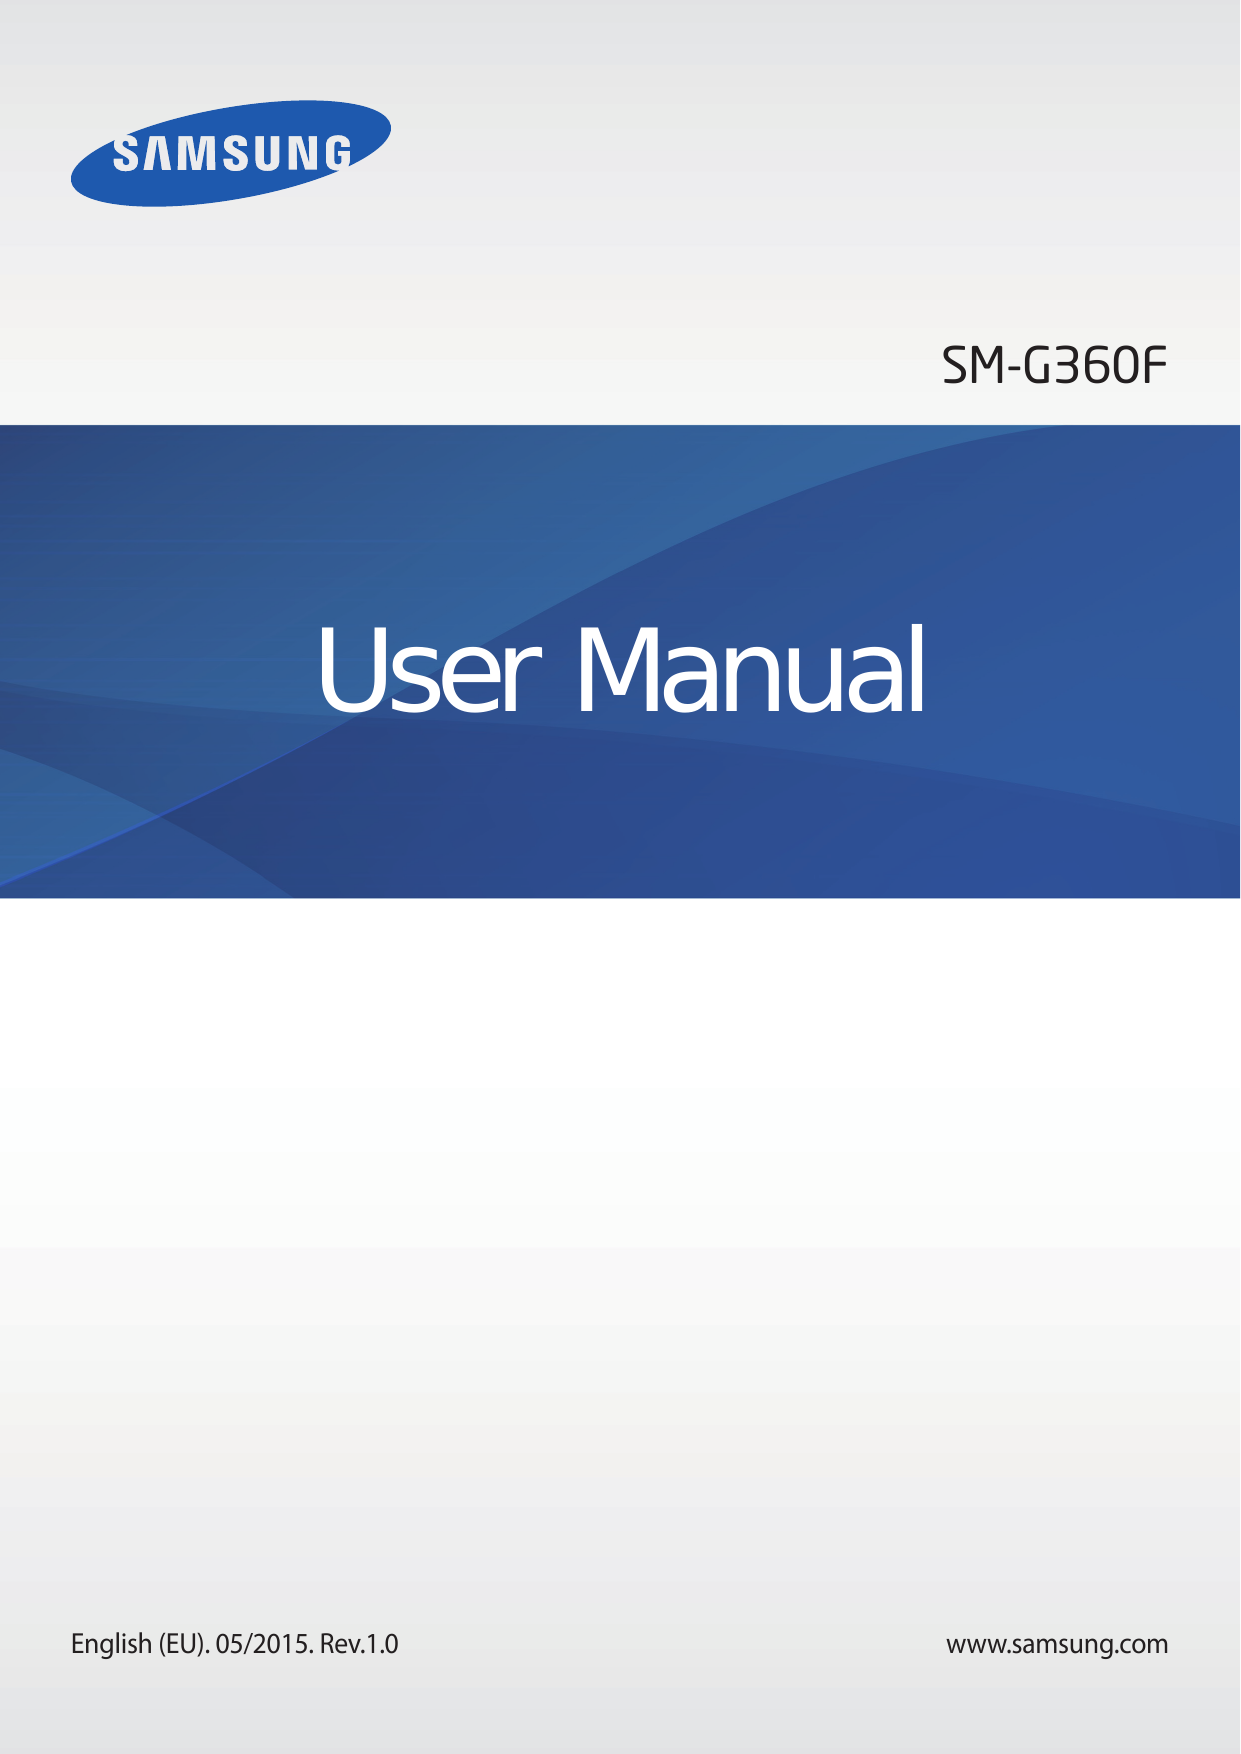 SM-G360FUser ManualEnglish (EU). 05/2015. Rev.1.0www.samsung.com